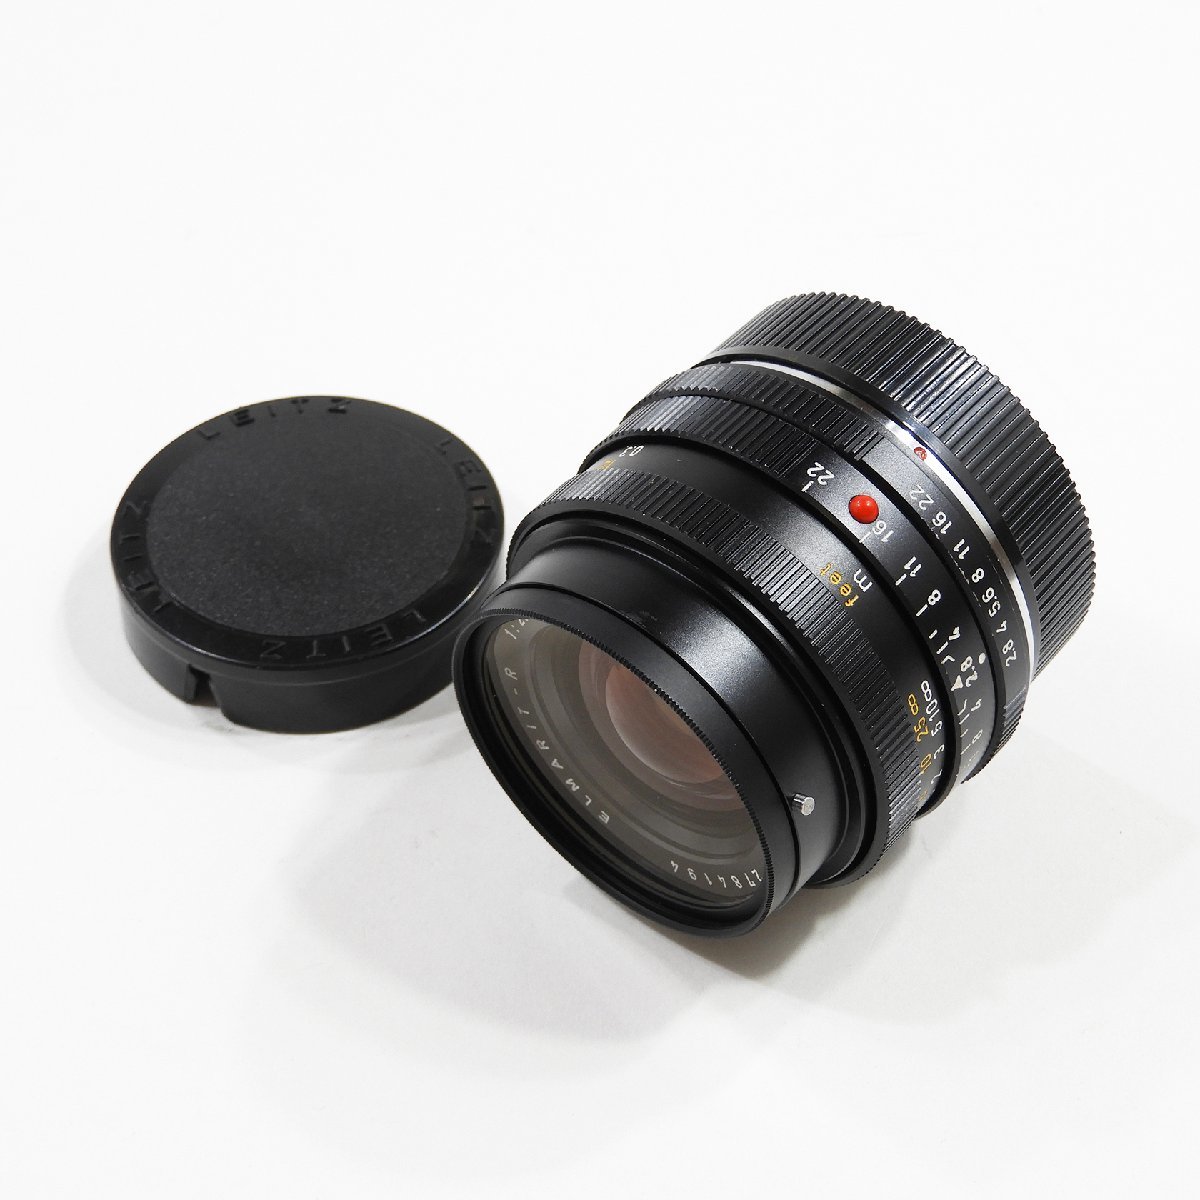 Leitz Wetzlar ライカ ELMARIT-R 28mm F2.8 レンズ ジャンク #10857 オールド レトロ カメラ アクセサリー_画像1